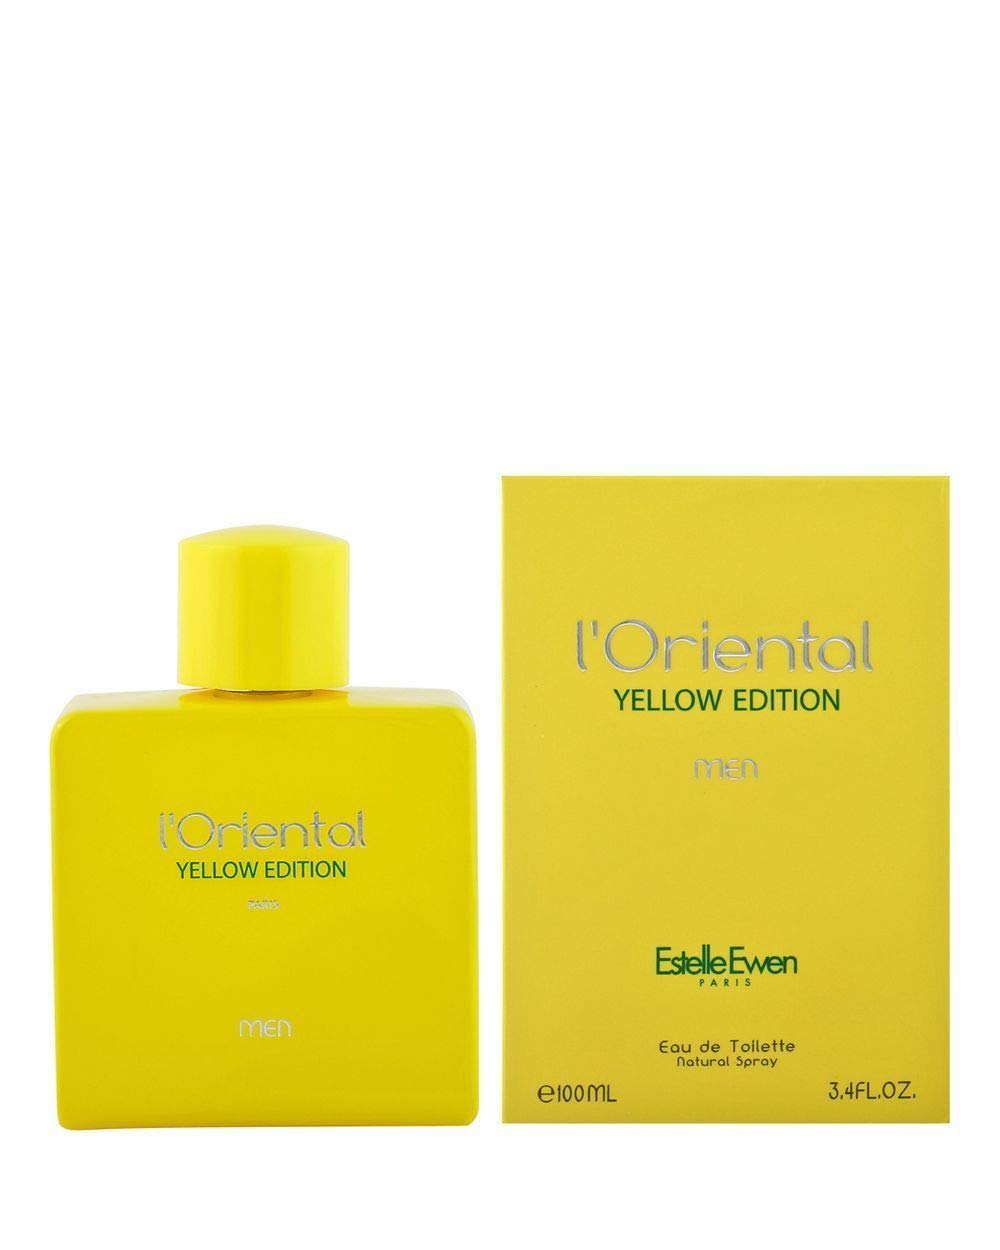 عطر ادکلن اورینتال زرد- یلو ادیشن | Geparlys L’oriental Yellow Edition